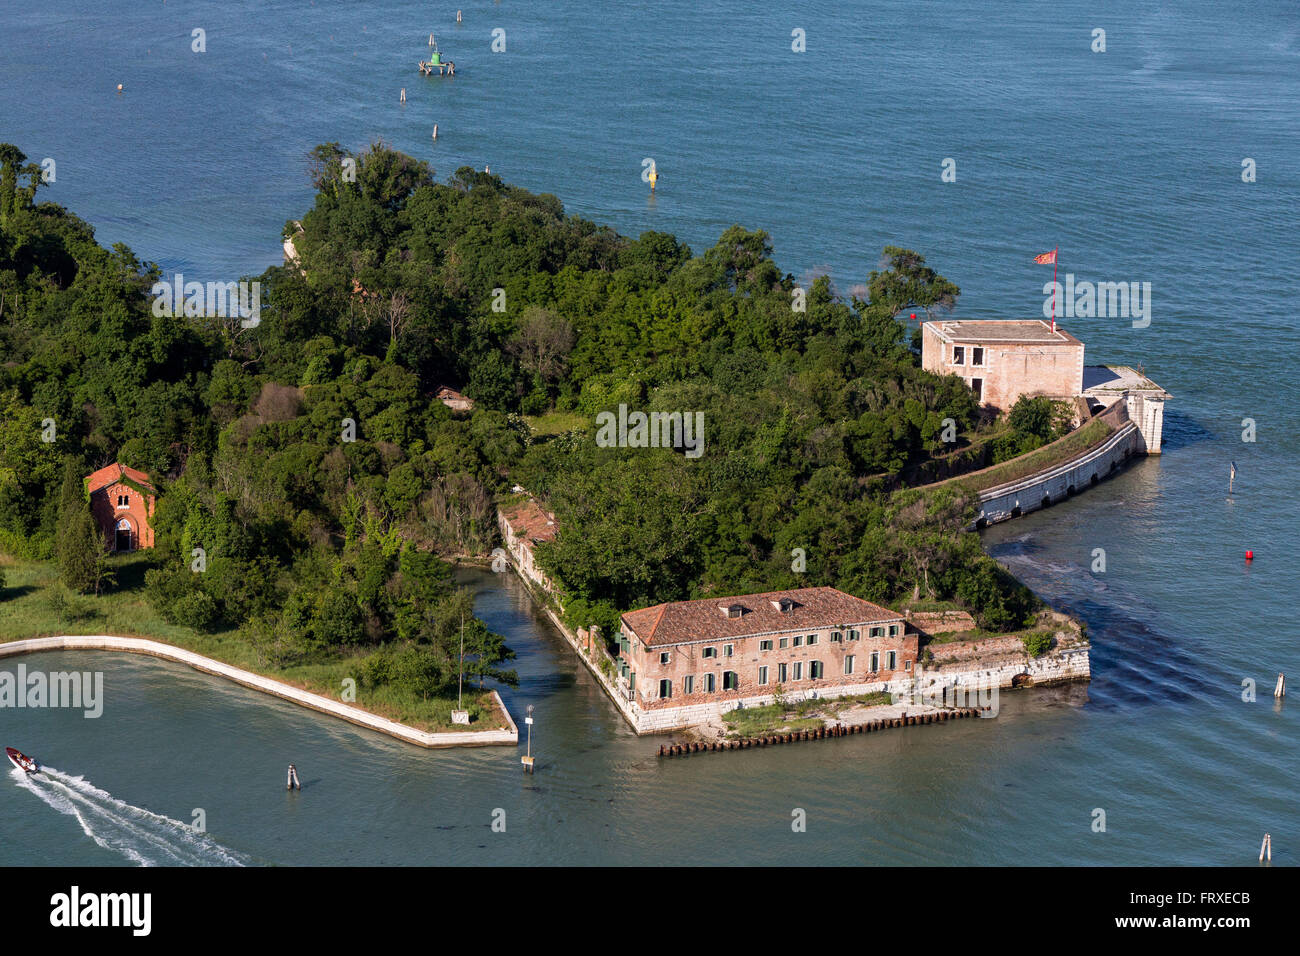 Luftaufnahme der Inseln in der Lagune von Venedig, Anreicherung von San Andrea neben den Inseln Le Vignole und La Certosa, Veneto, Italien Stockfoto